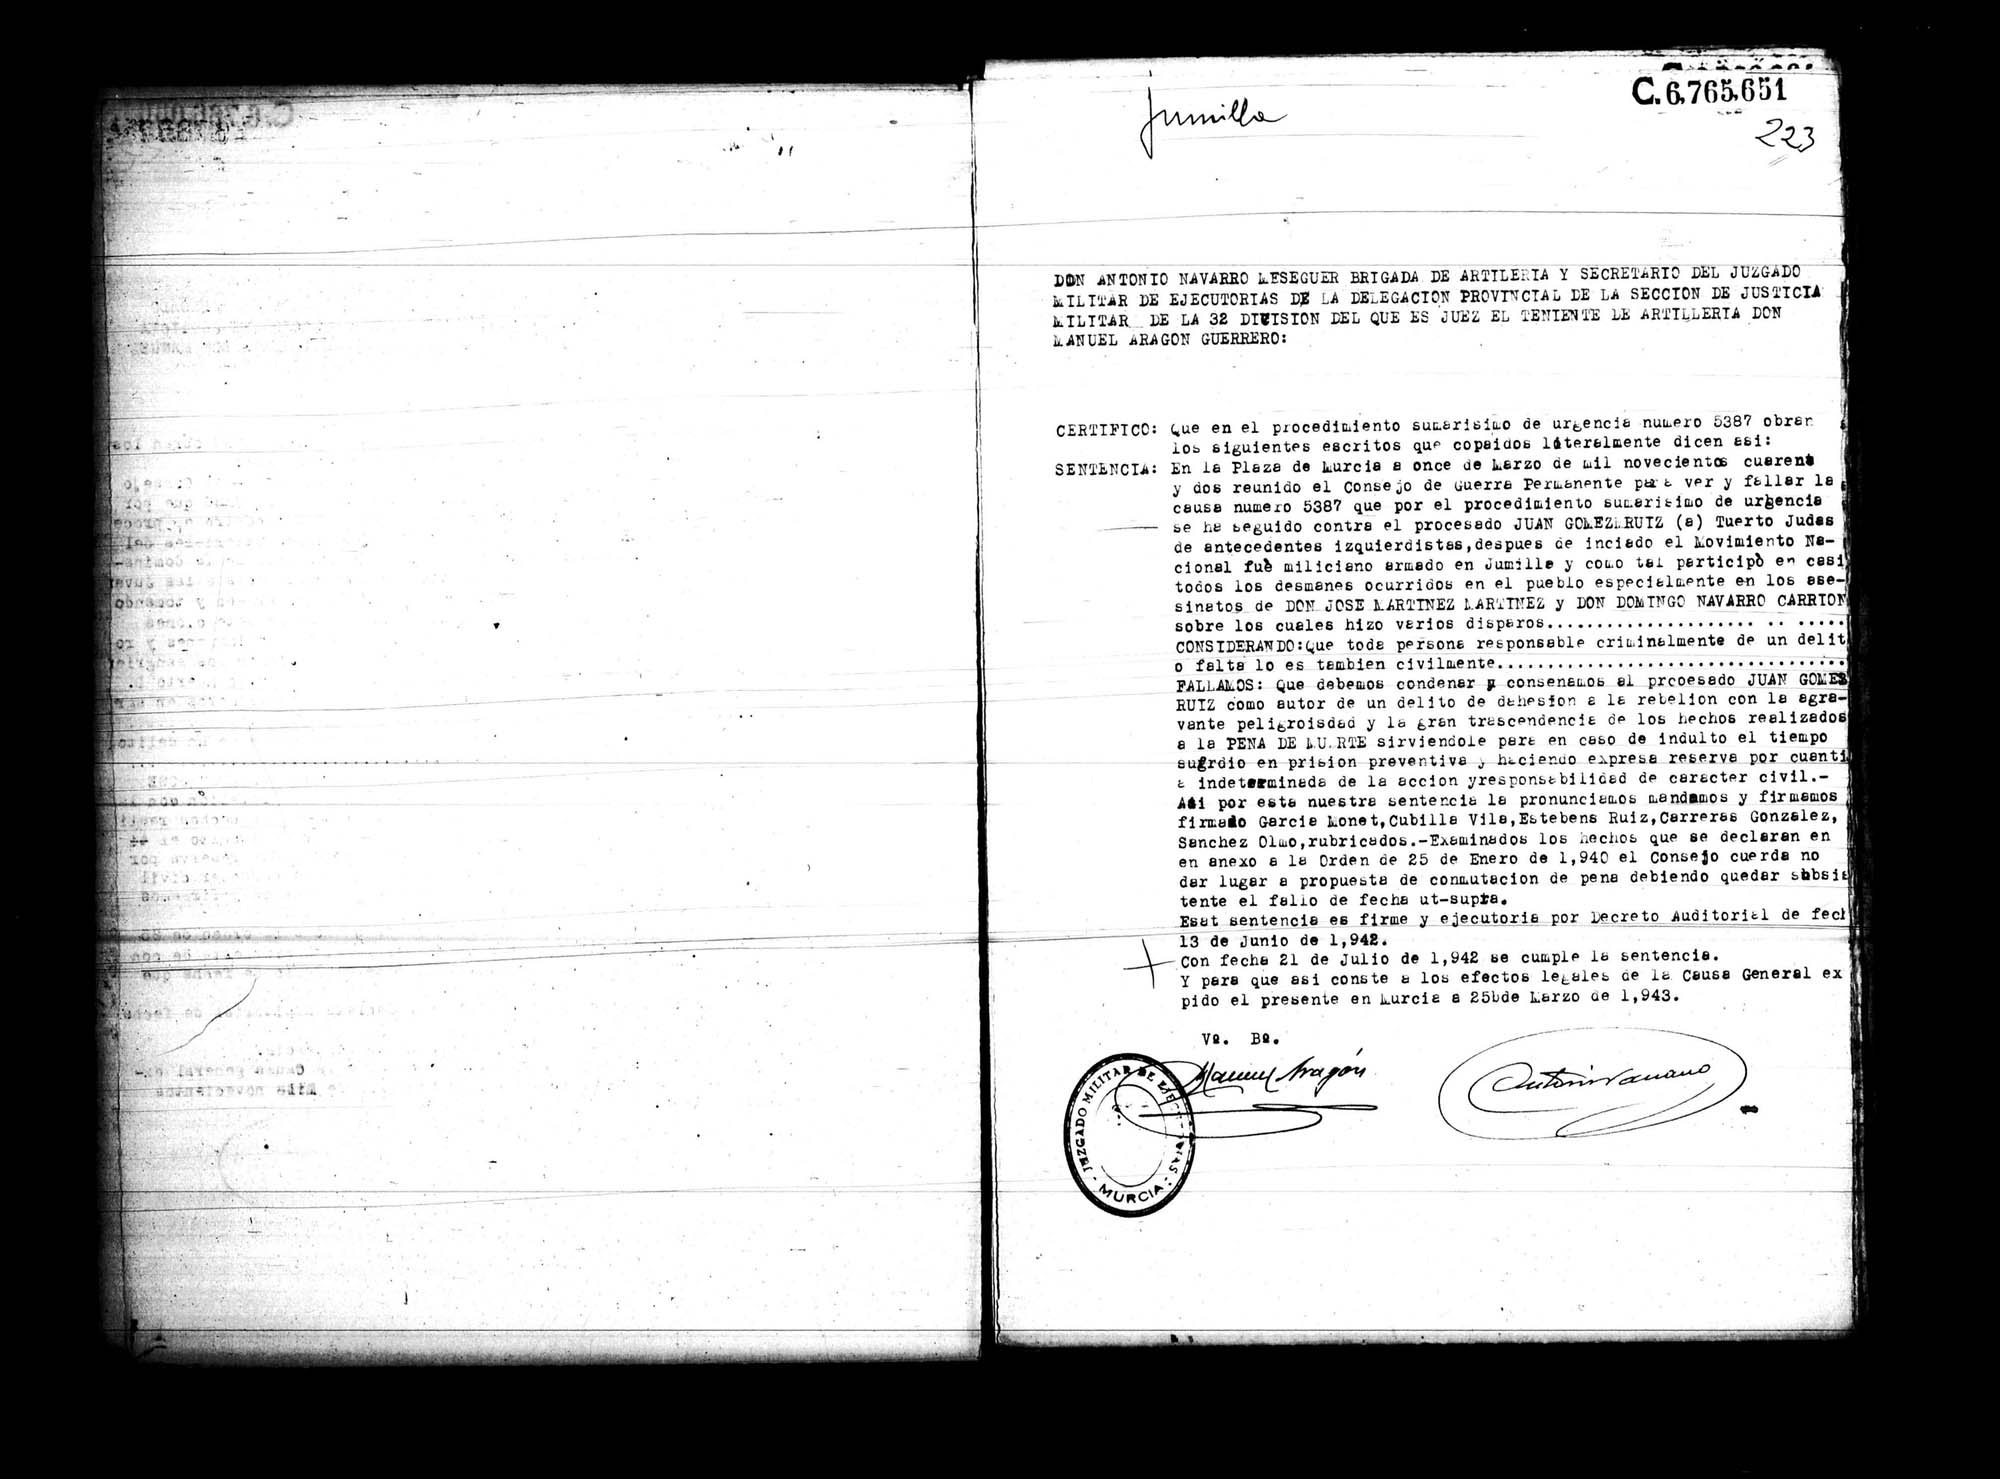 Certificado de la sentencia pronunciada contra Juan Gómez Ruiz, causa 5387, el 11 de marzo de 1942 en Murcia.